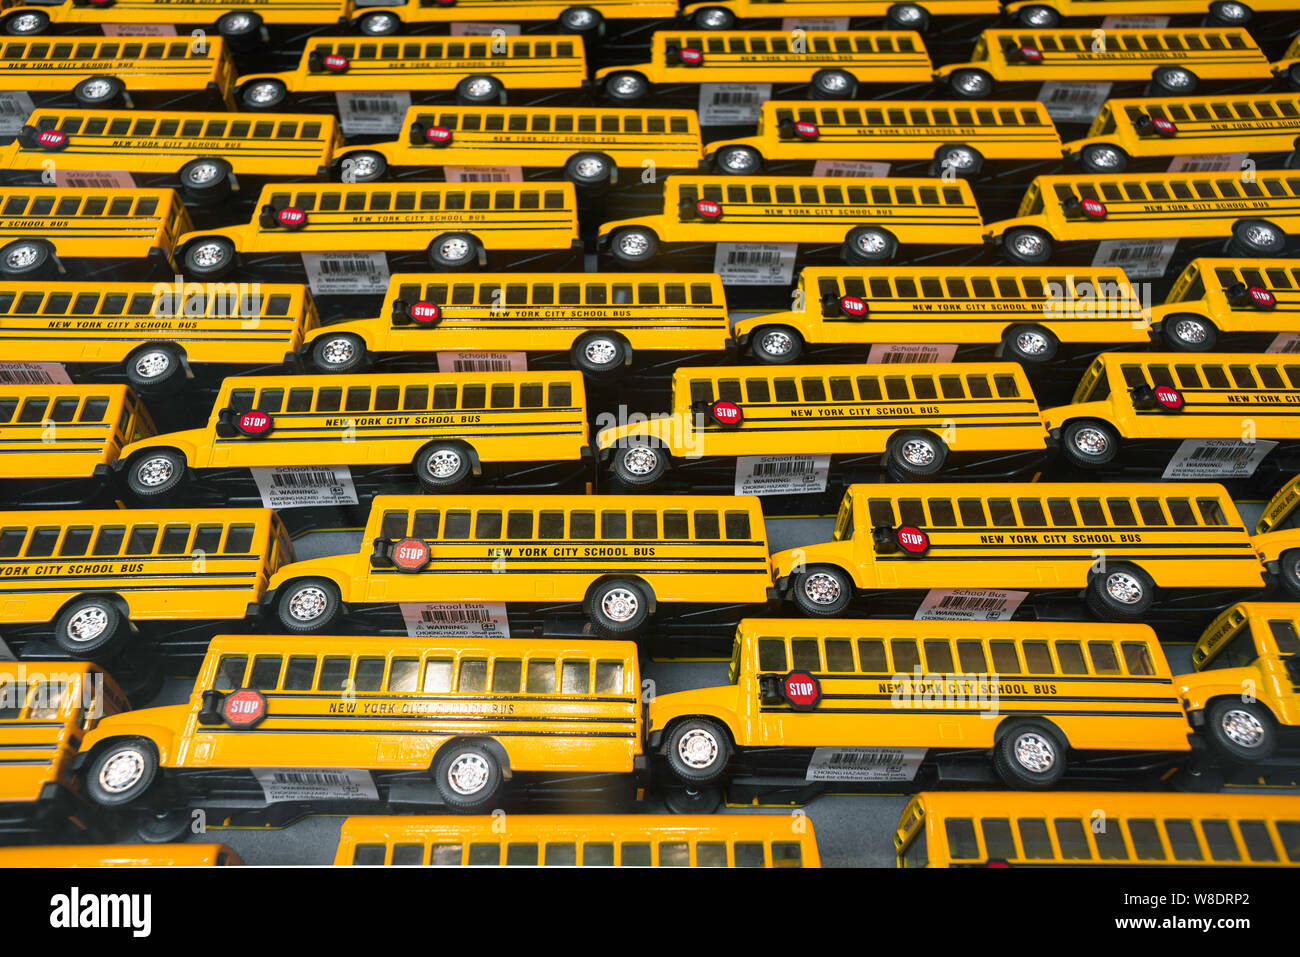 https://c8.alamy.com/compes/w8drp2/autobus-amarillo-vista-de-los-autobuses-de-juguete-amarillo-de-la-escuela-en-exhibicion-en-una-ventana-de-la-tienda-de-manhattan-nueva-york-w8drp2.jpg